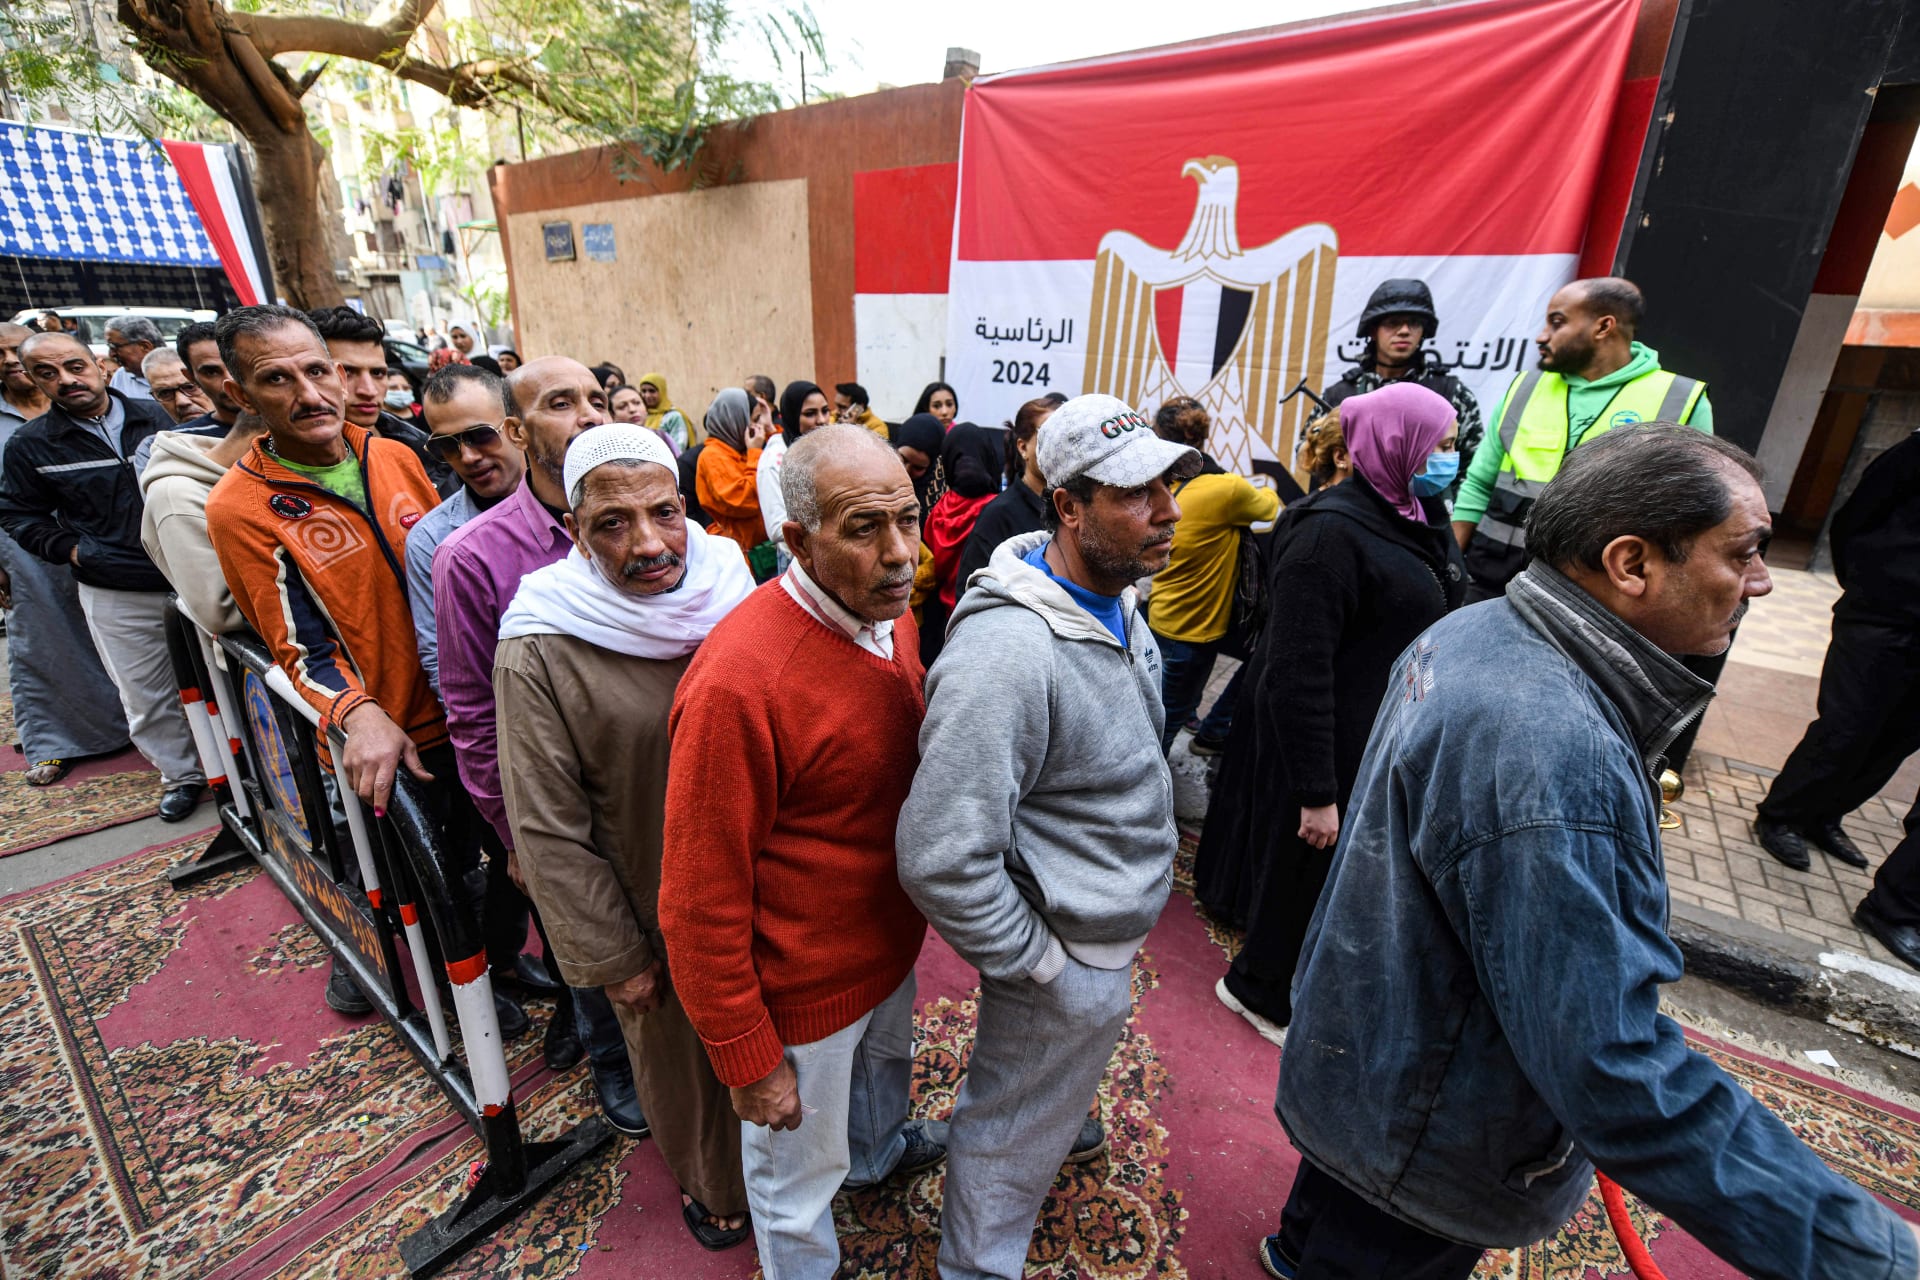 تفاعل على تصريح وزير الأوقاف "مصر اليوم في عيد".. ونجيب ساويرس يُعلق